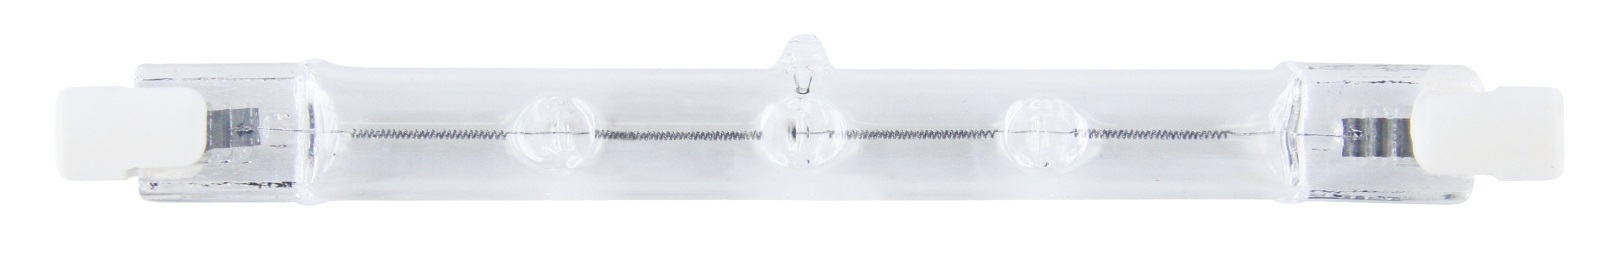 Lineární halogenová žárovka J118 400W R7s teplá bílá